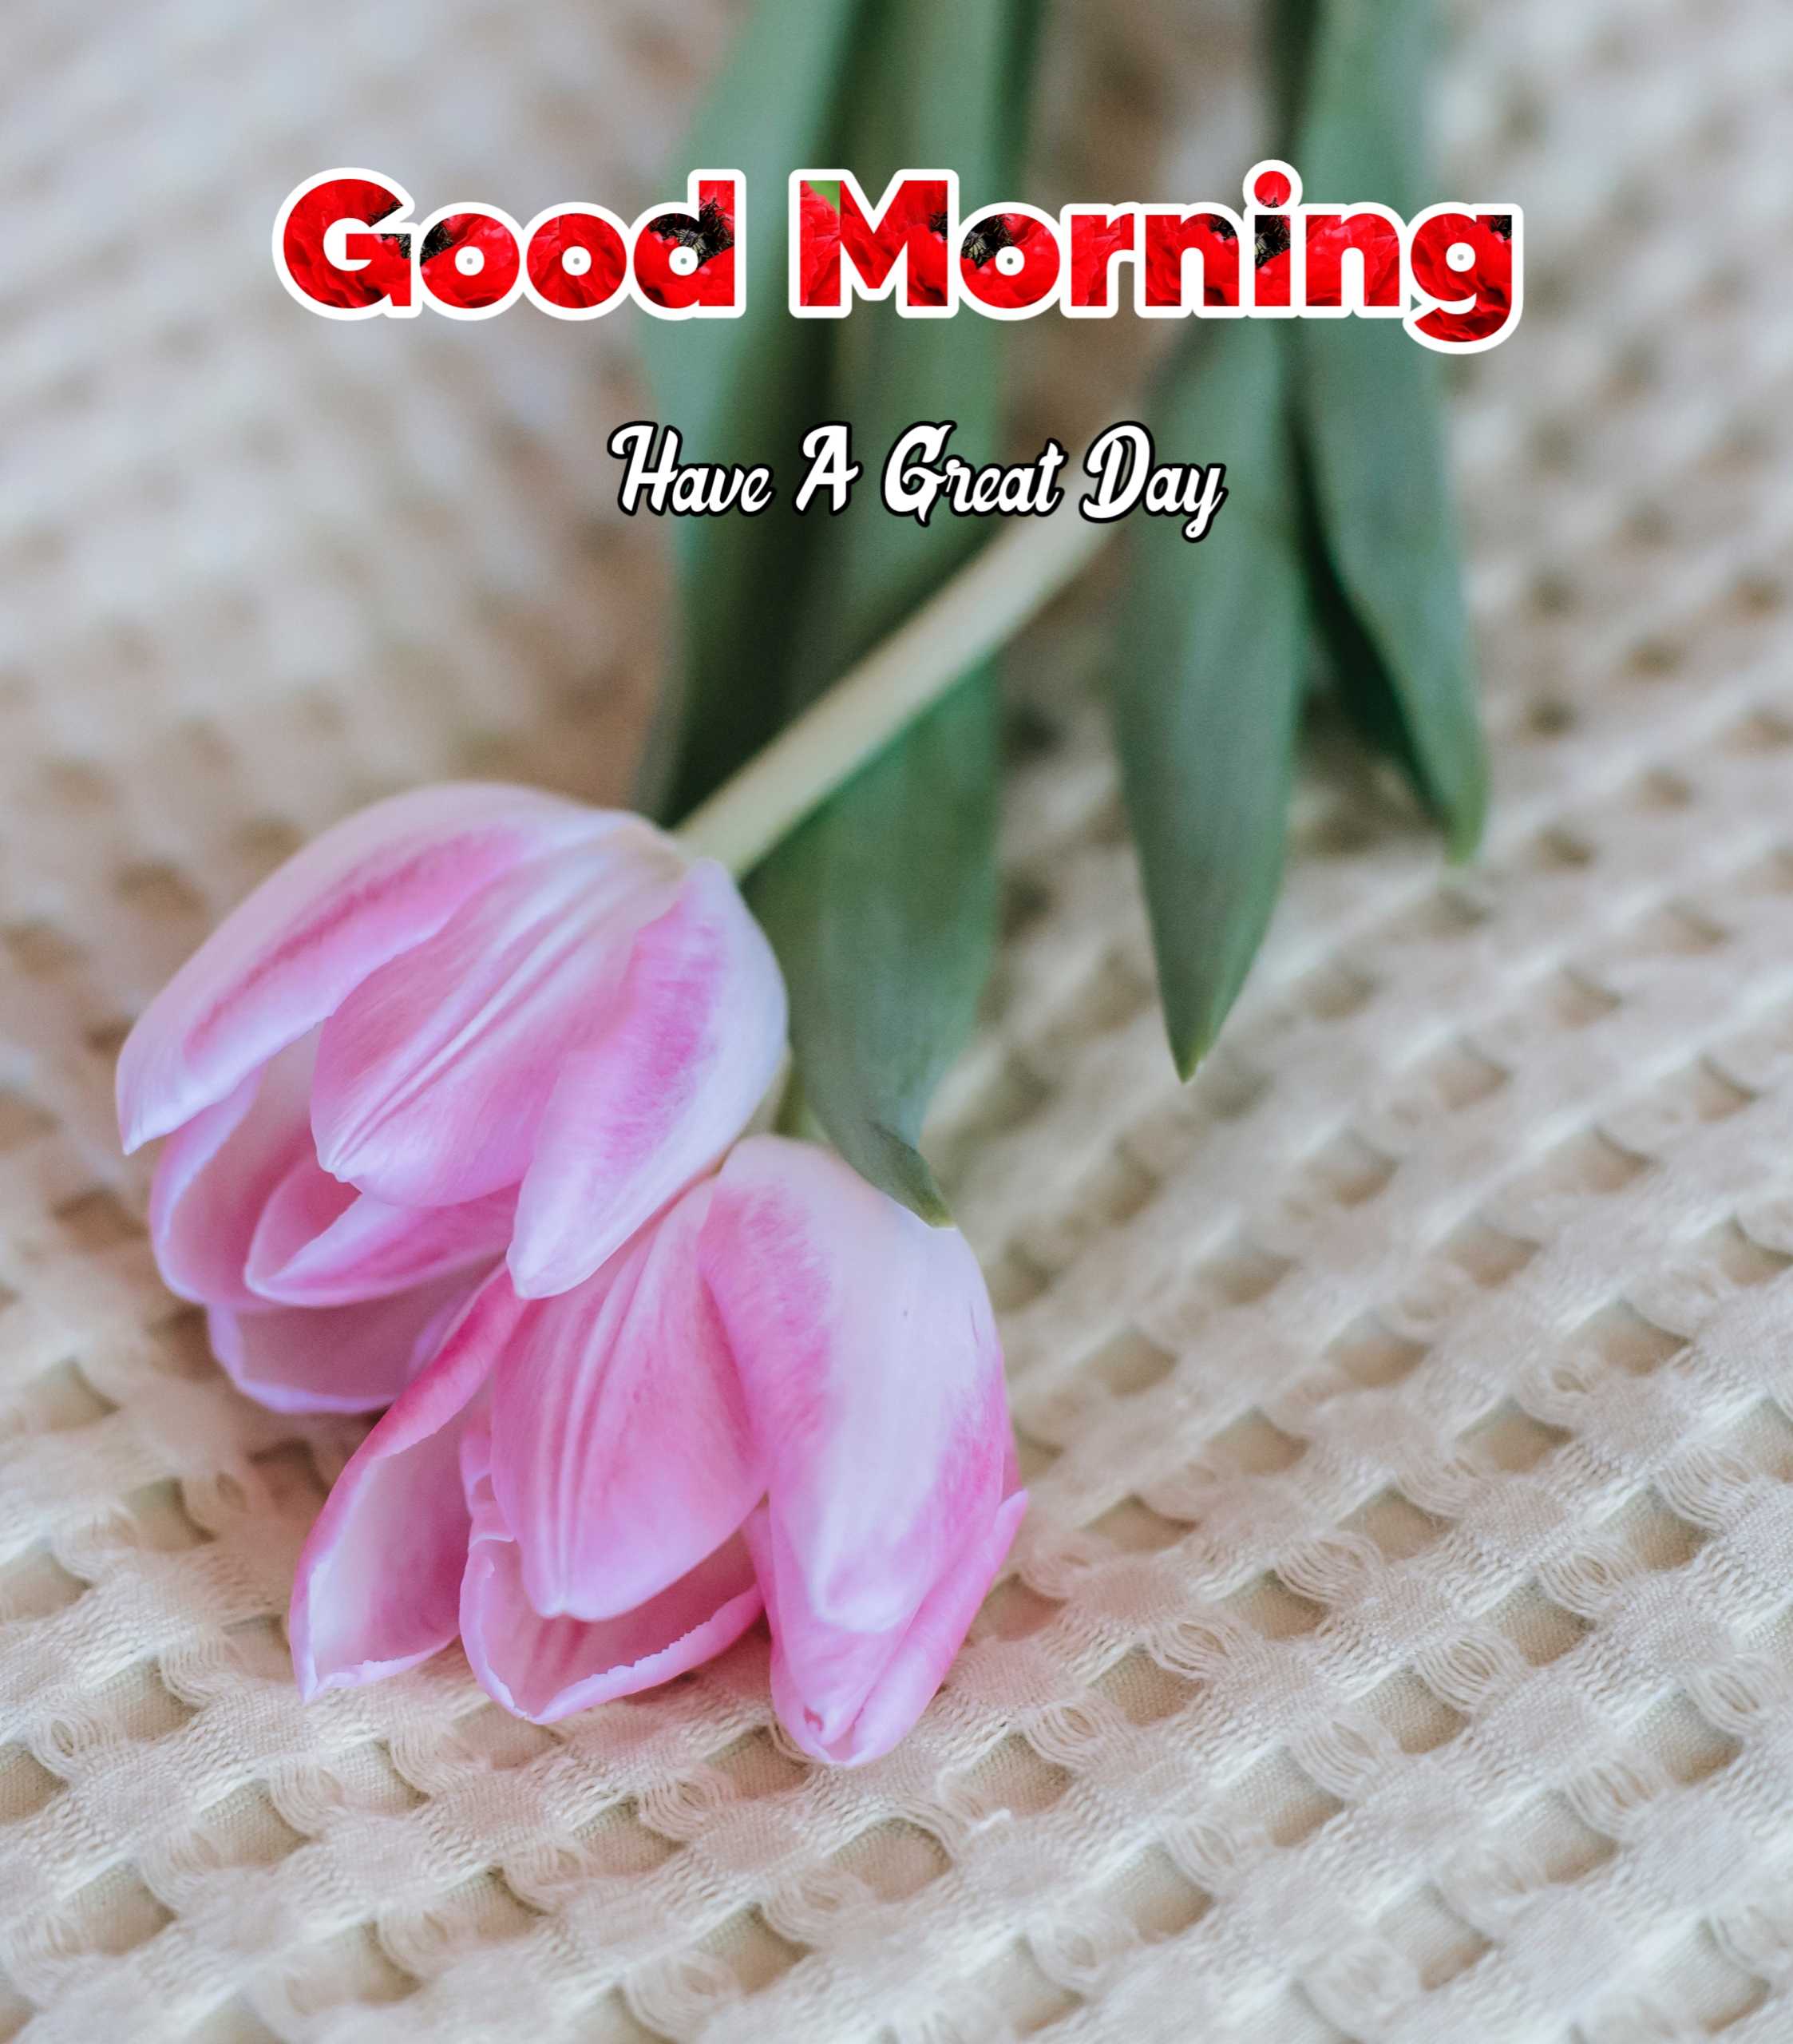 Good Morning Rose Pink Flower Image 